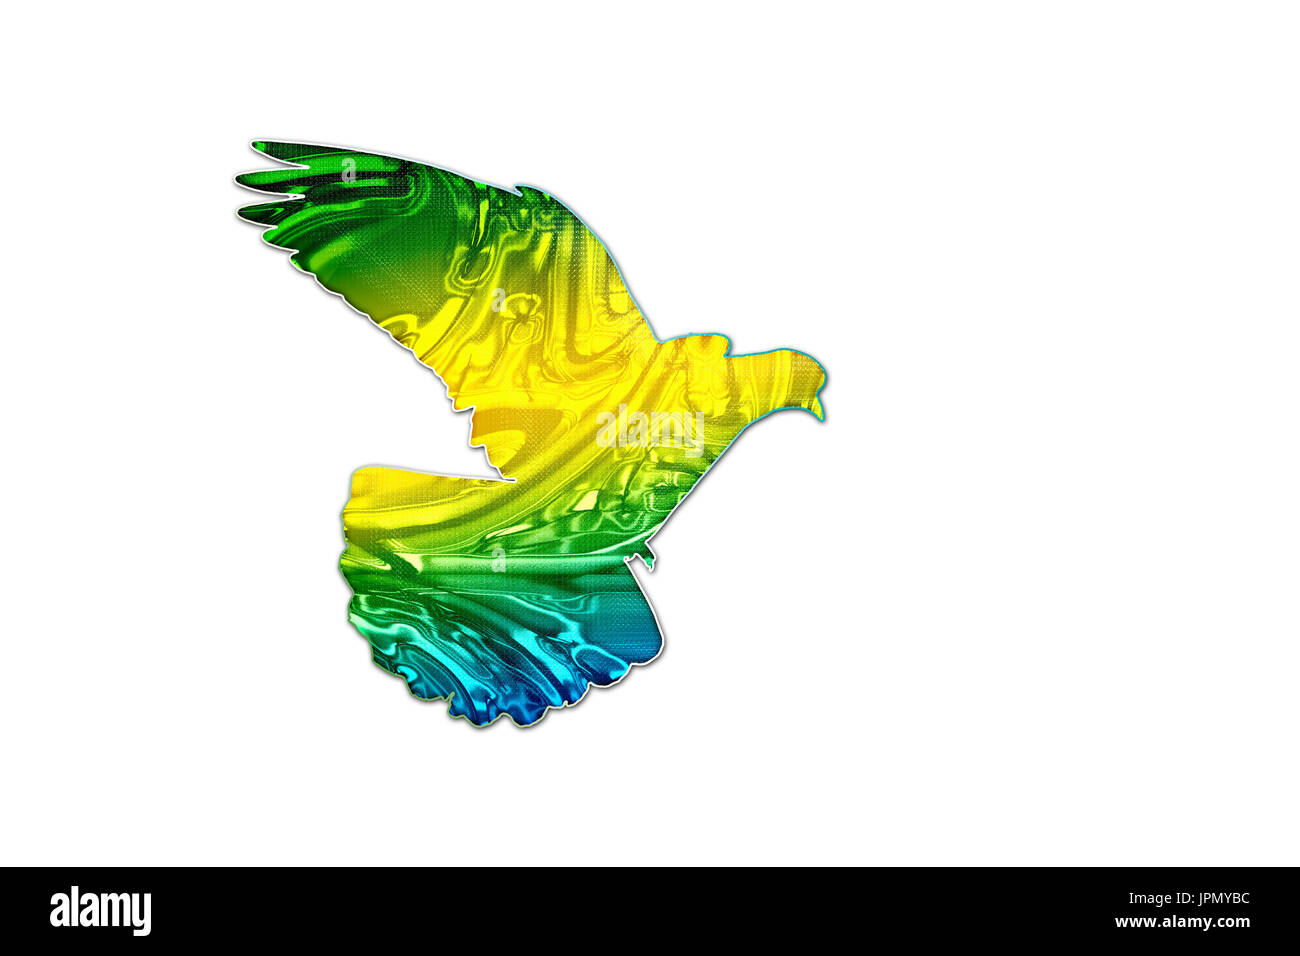 Les couleurs du drapeau brésilien sur la silhouette d'une colombe Banque D'Images